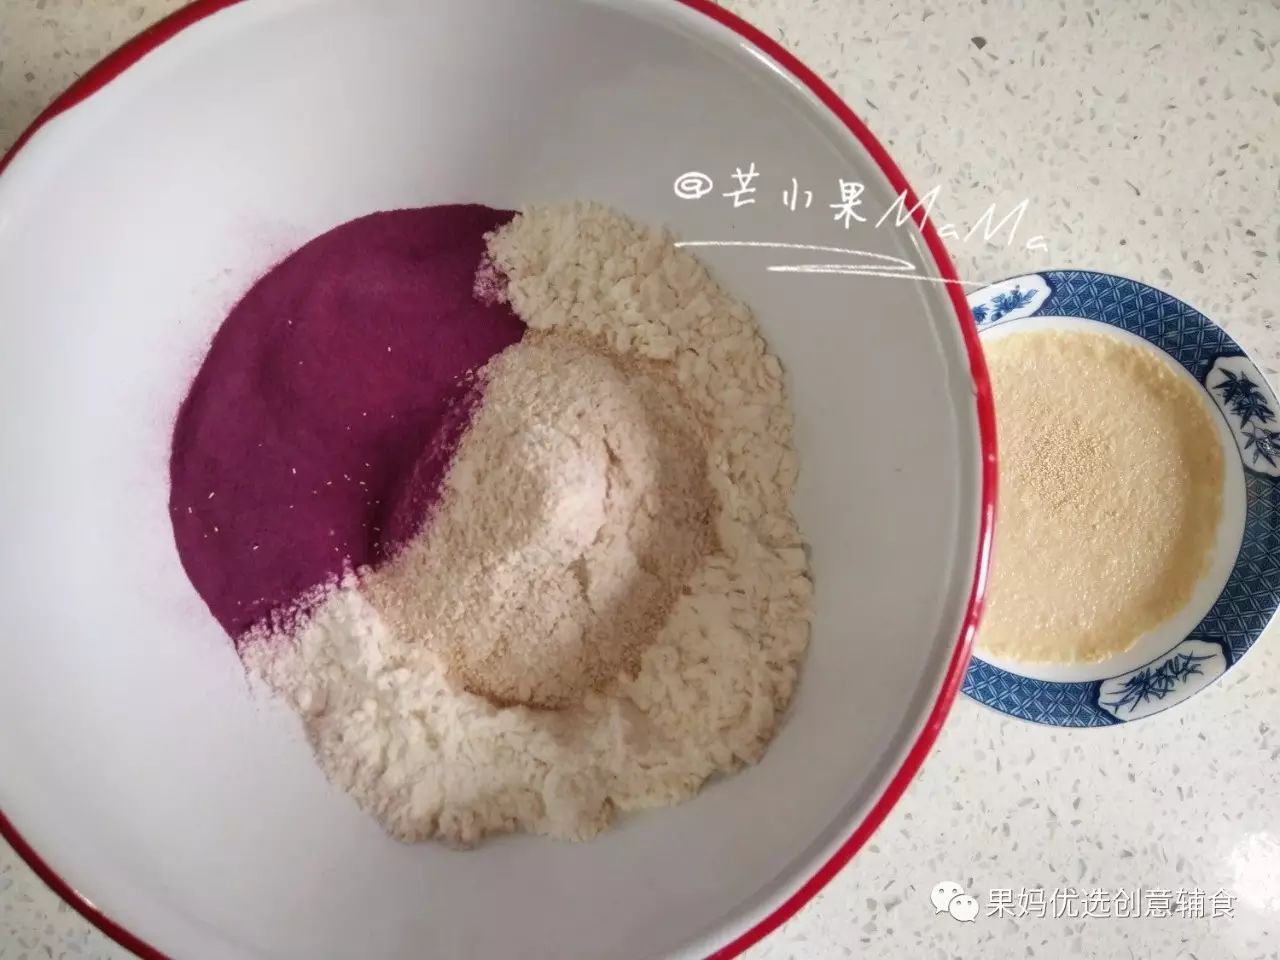 夹心酸奶面包的做法_夹心烤面包店_面包夹心酱